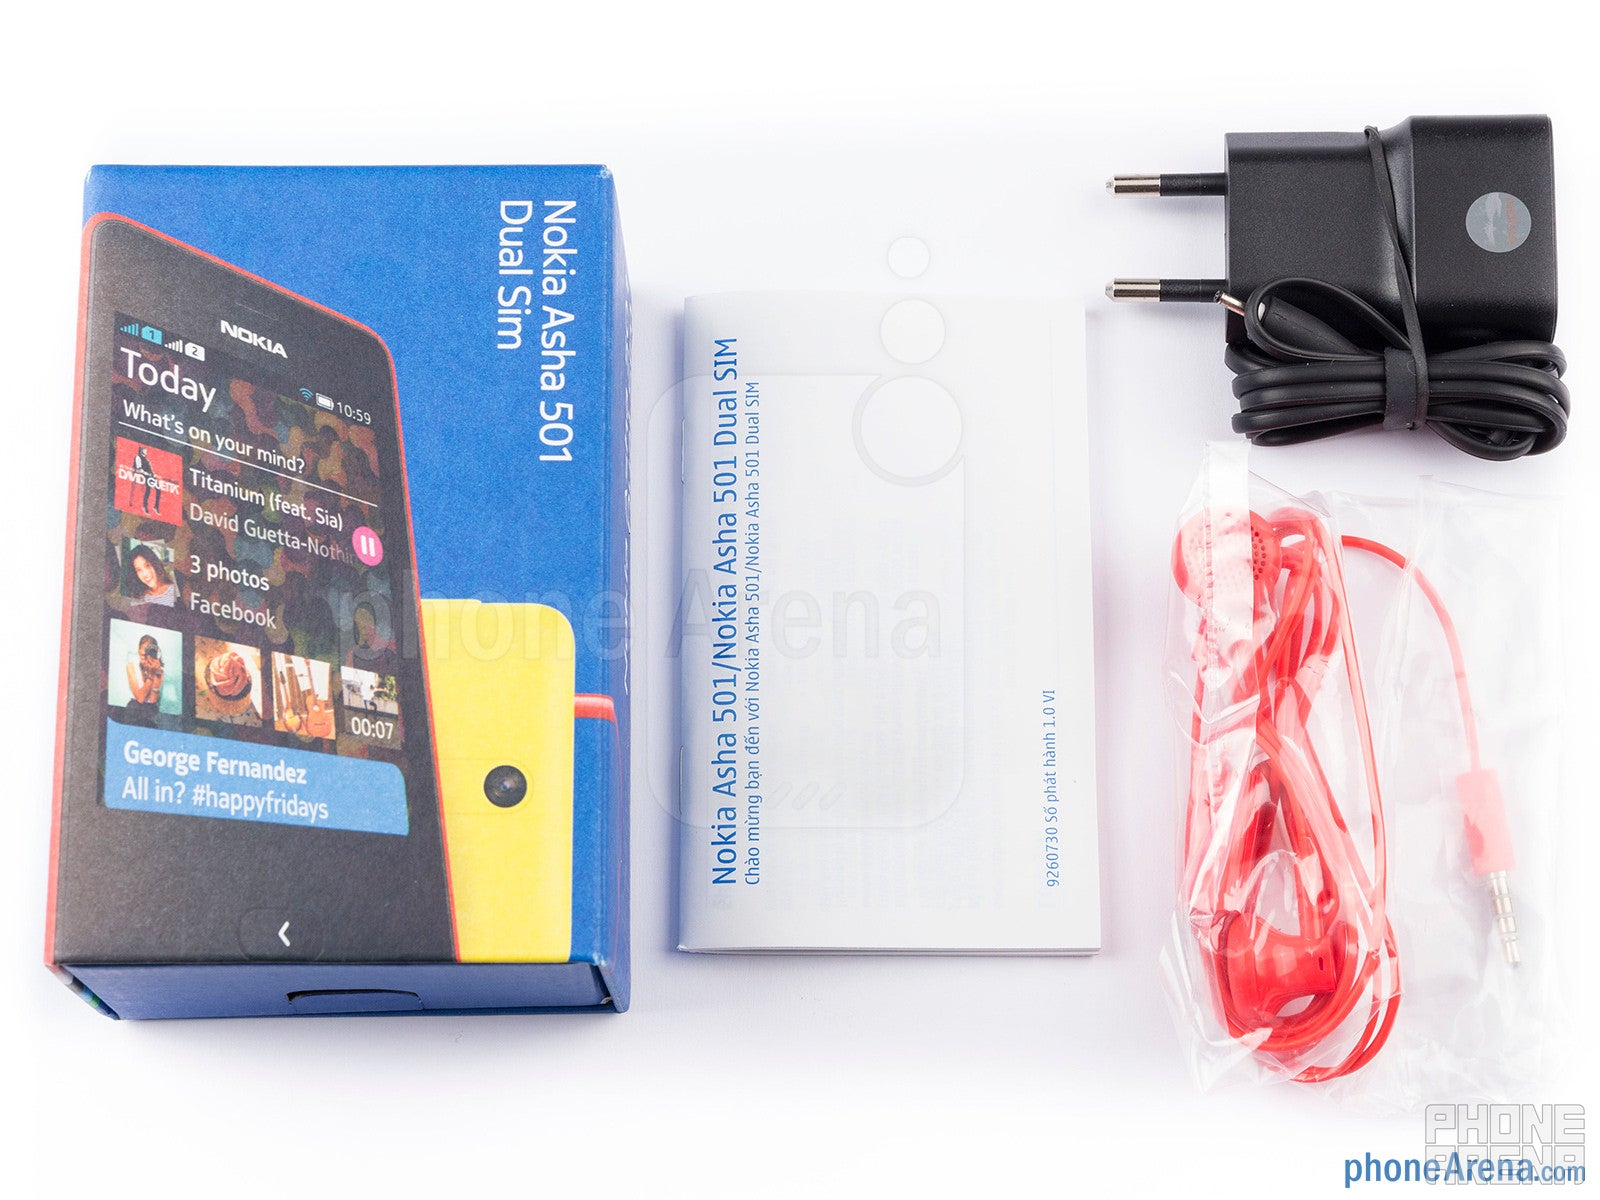 Box contents - Nokia Asha 501 Review